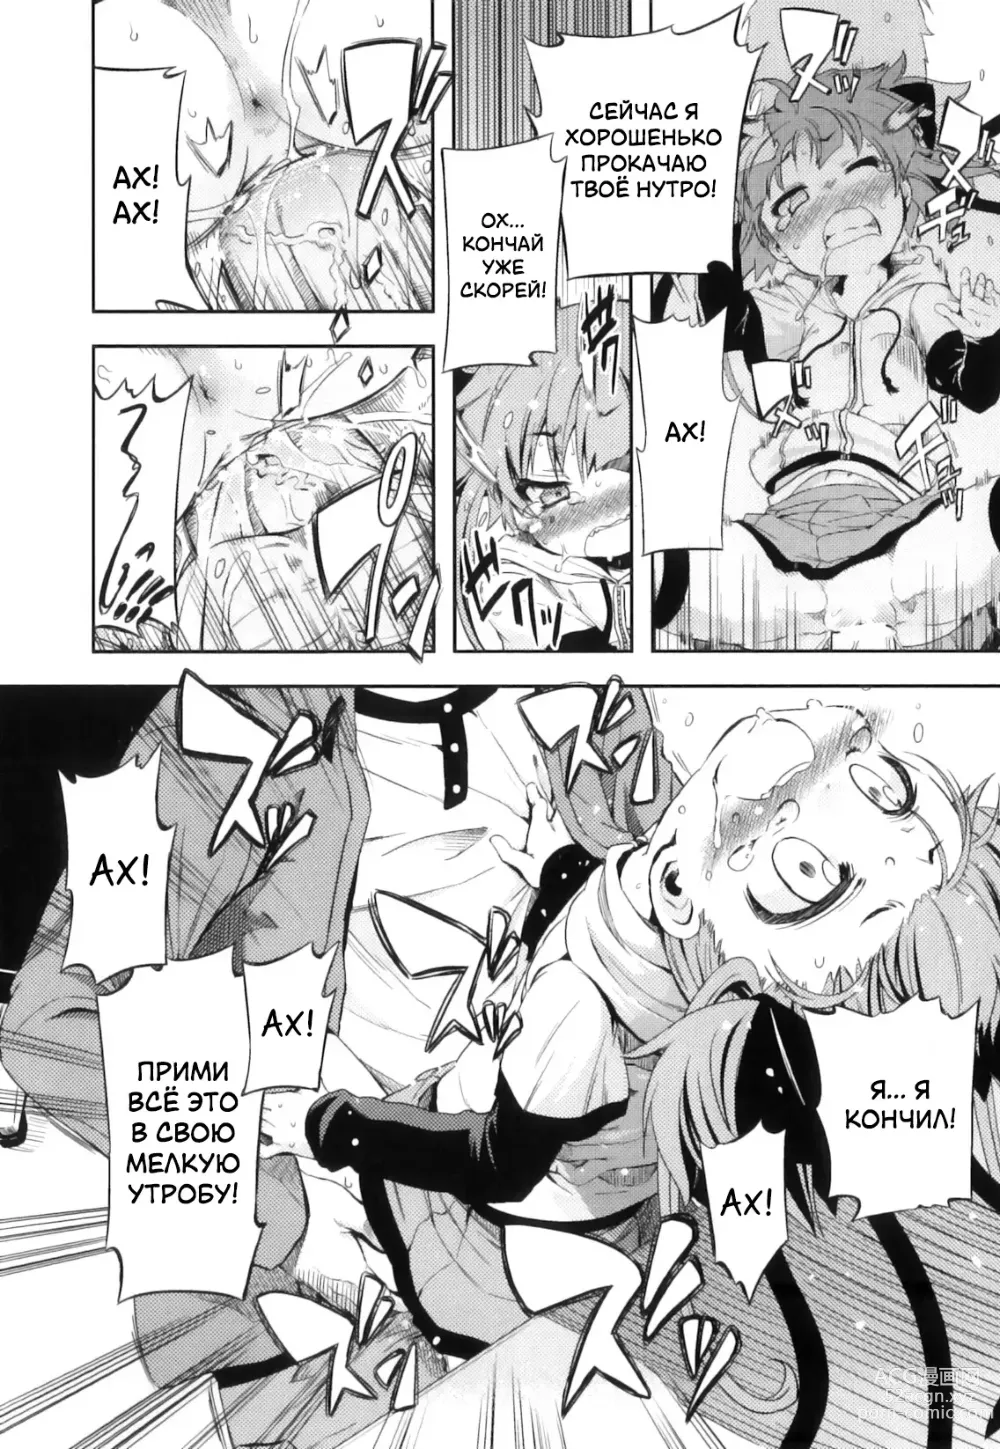 Page 22 of manga Это просто нереально!